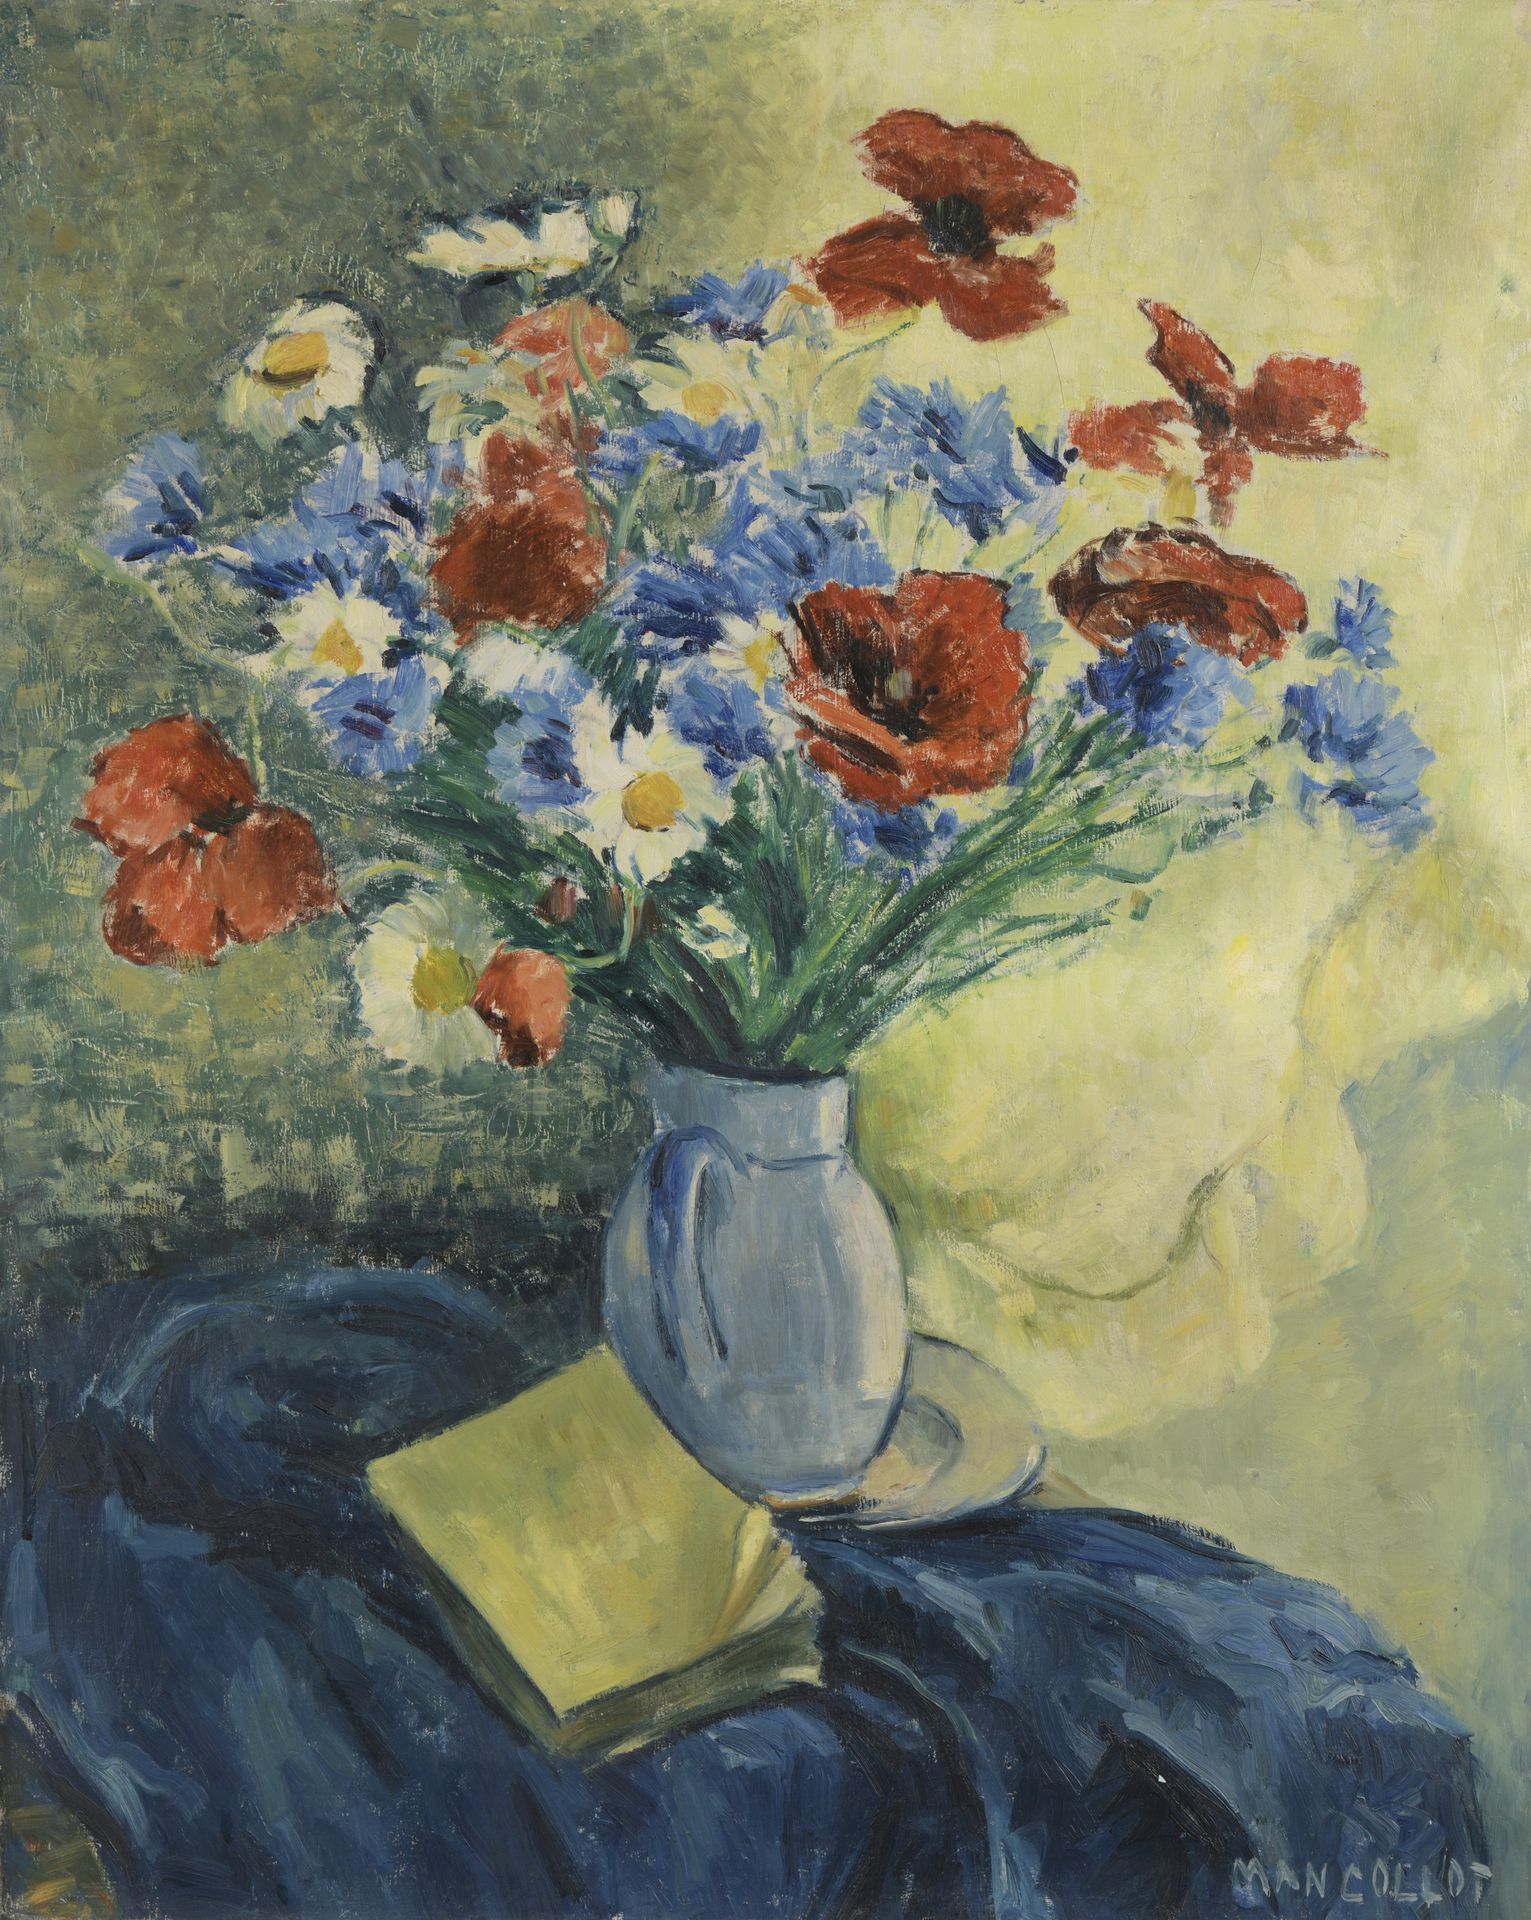 Null MAN COLLOT (1903-1962)

Stillleben mit Blumenstrauß

Öl auf Leinwand. 

Sig&hellip;